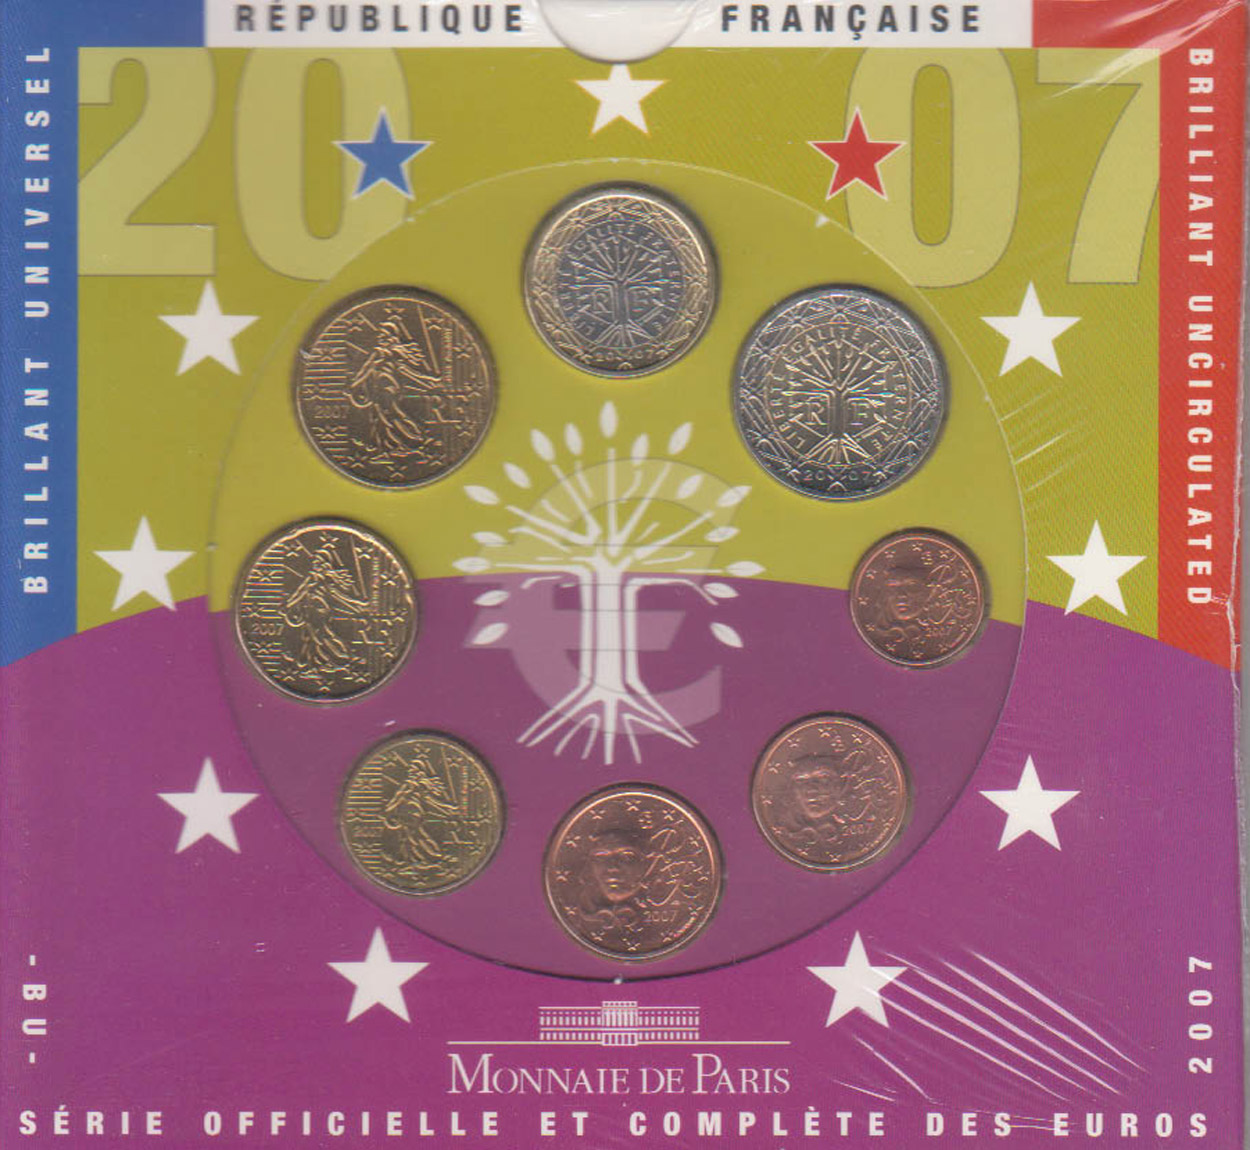  Offiz. Euo-KMS Frankreich 2007 3 Münzen nur in den offiz. Foldern nur 49.976St!   